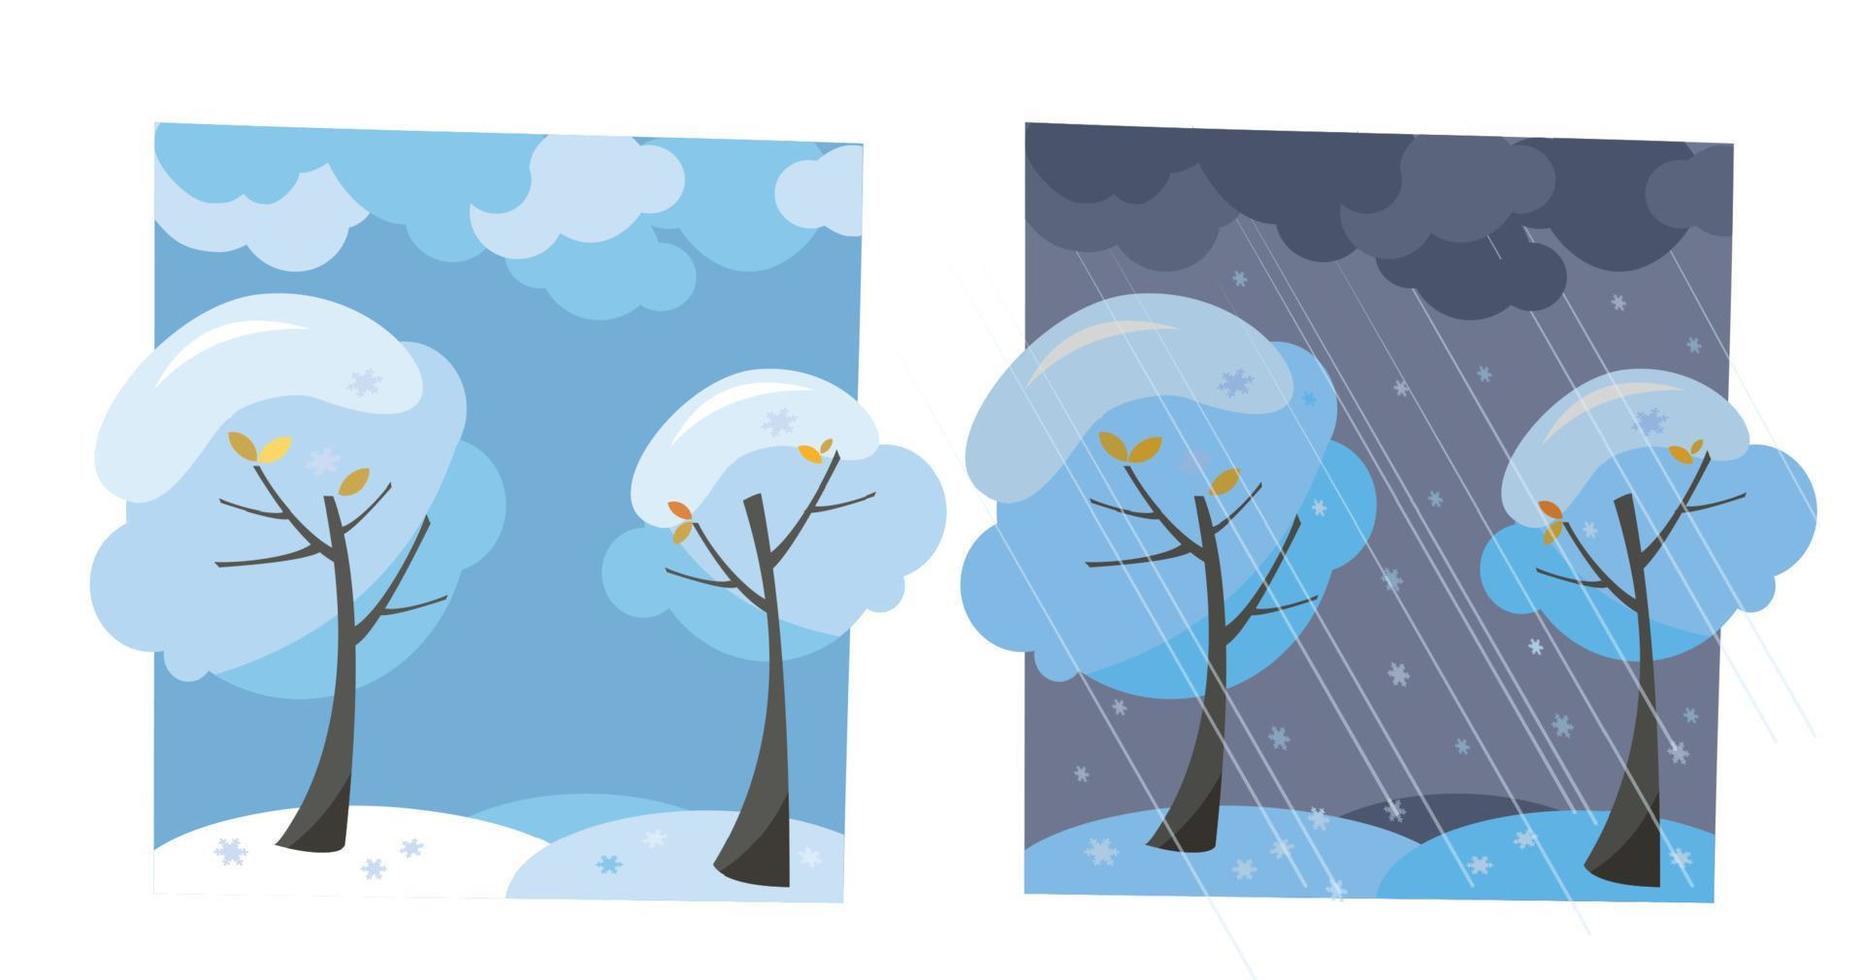 árboles de nieve de invierno con copos de nieve voladores. conjunto de dos imágenes no paralelas con vistas al buen tiempo soleado y la noche oscura. ilustración vectorial de dibujos animados plana. árboles con corona redonda bajo el cielo de las nubes vector